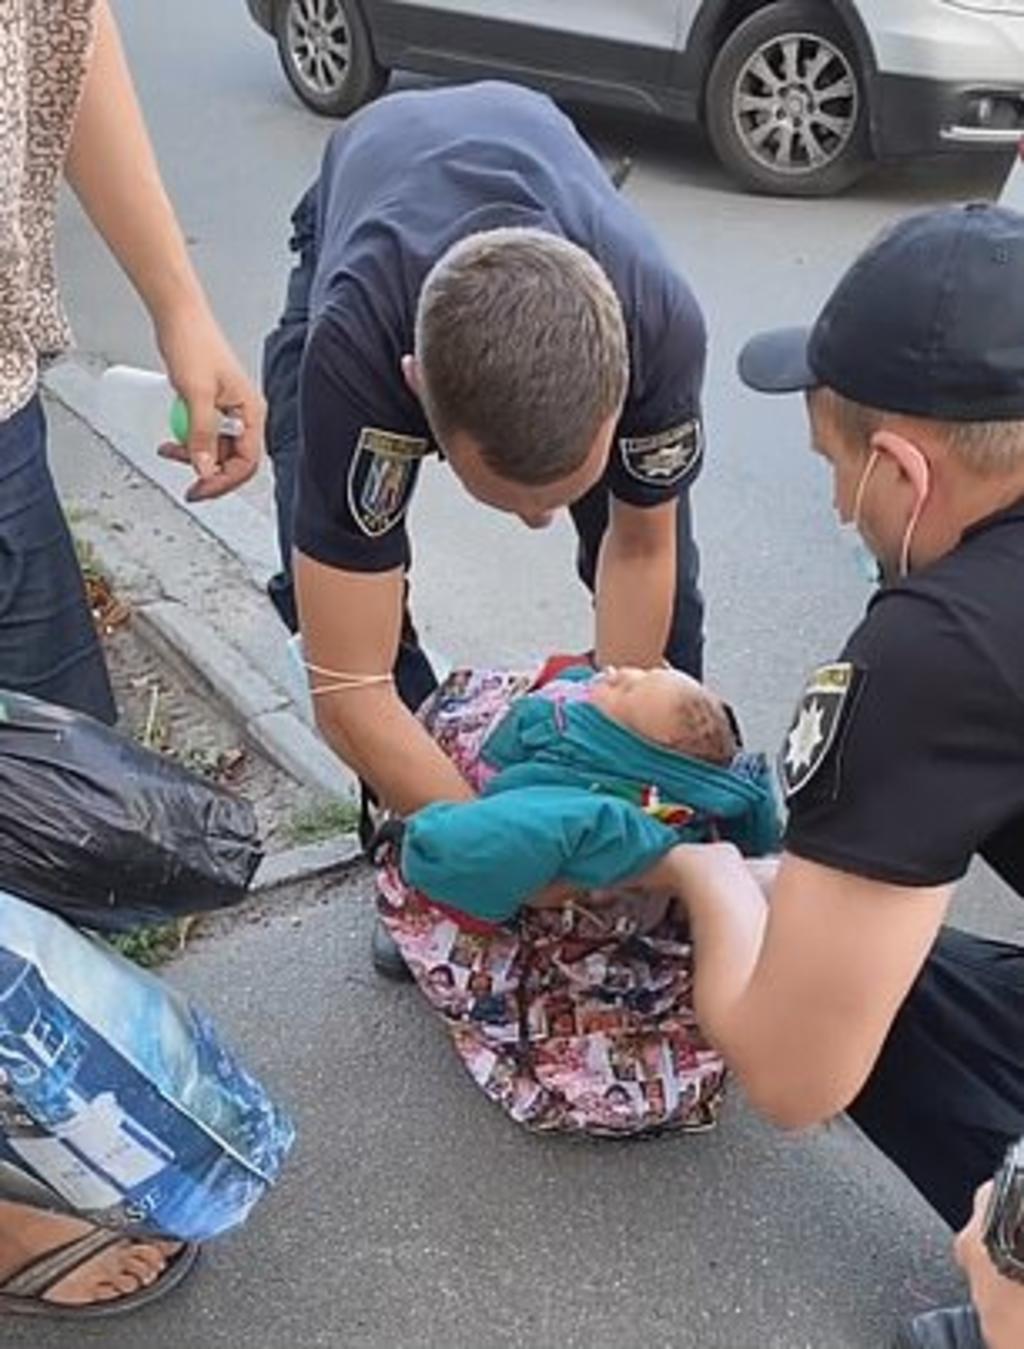 Mujer es multada por transportar a un bebé recién nacido en una bolsa reutilizable